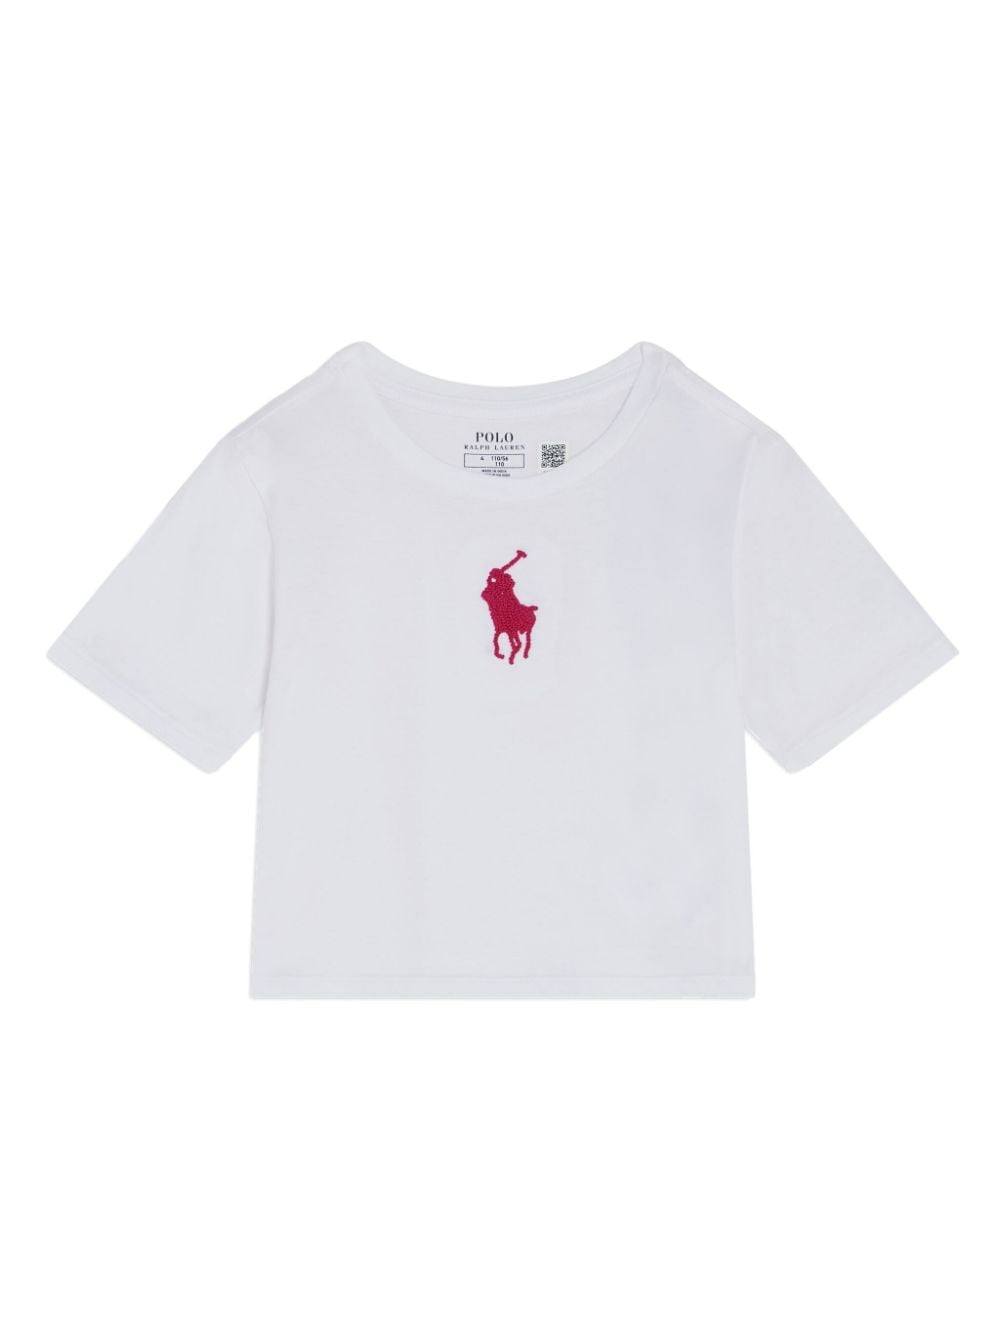 Ralph Lauren Kids Polo Pony-embroidered cotton T-shirt - White von Ralph Lauren Kids